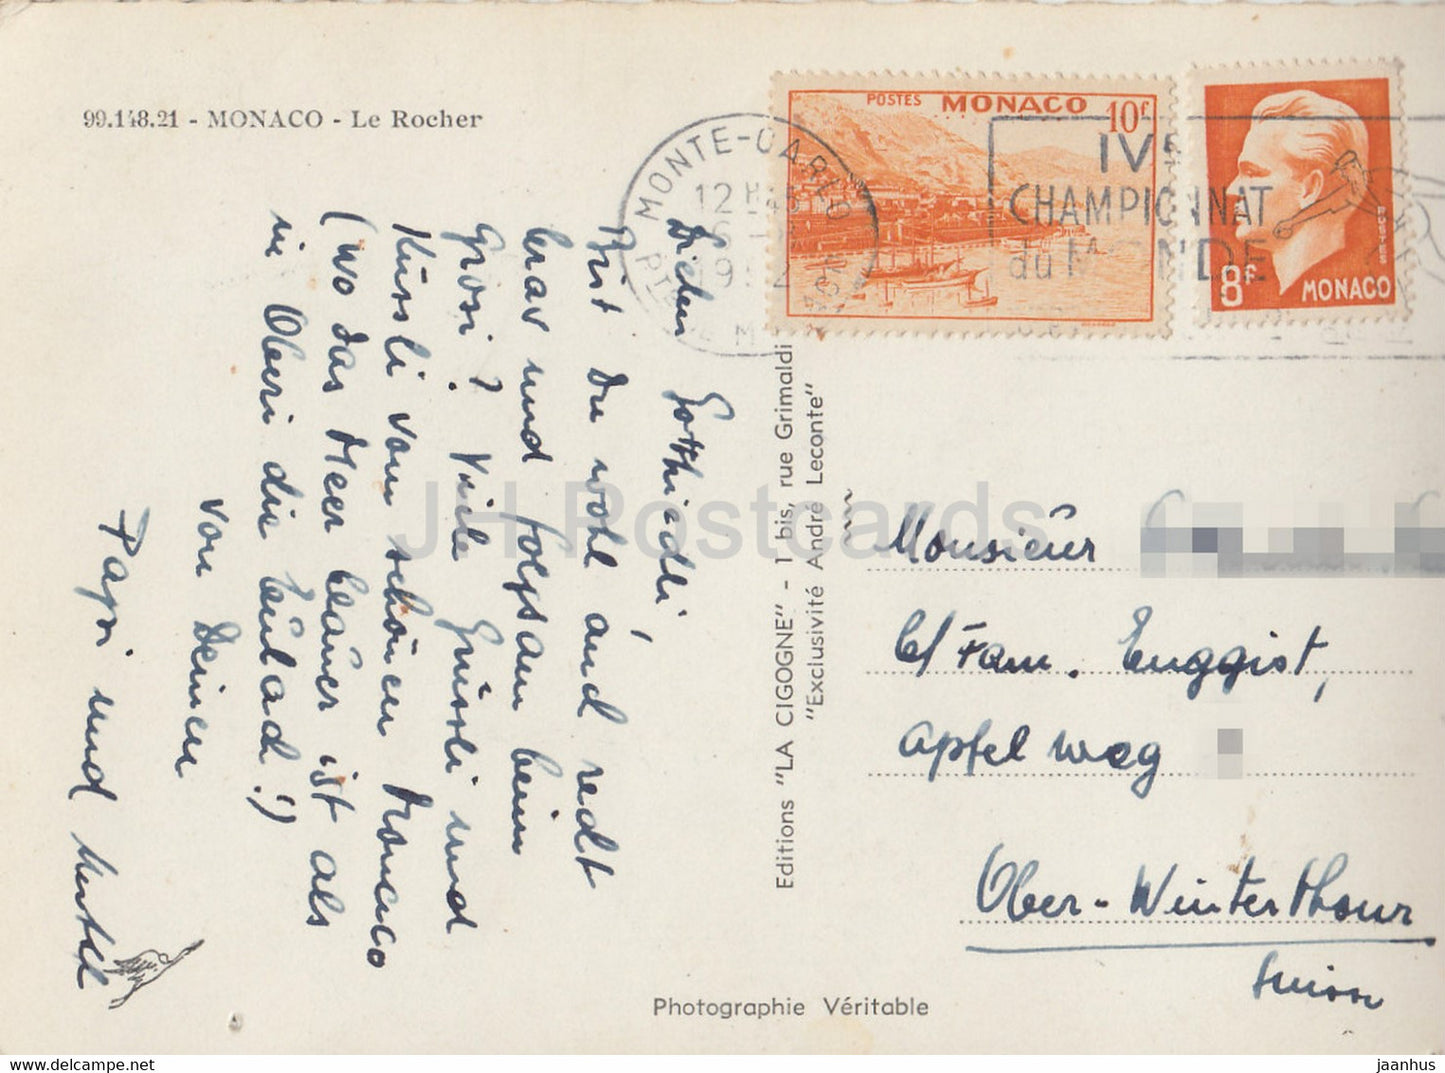 Le Rocher - old postcard - 1952 - Monaco - used